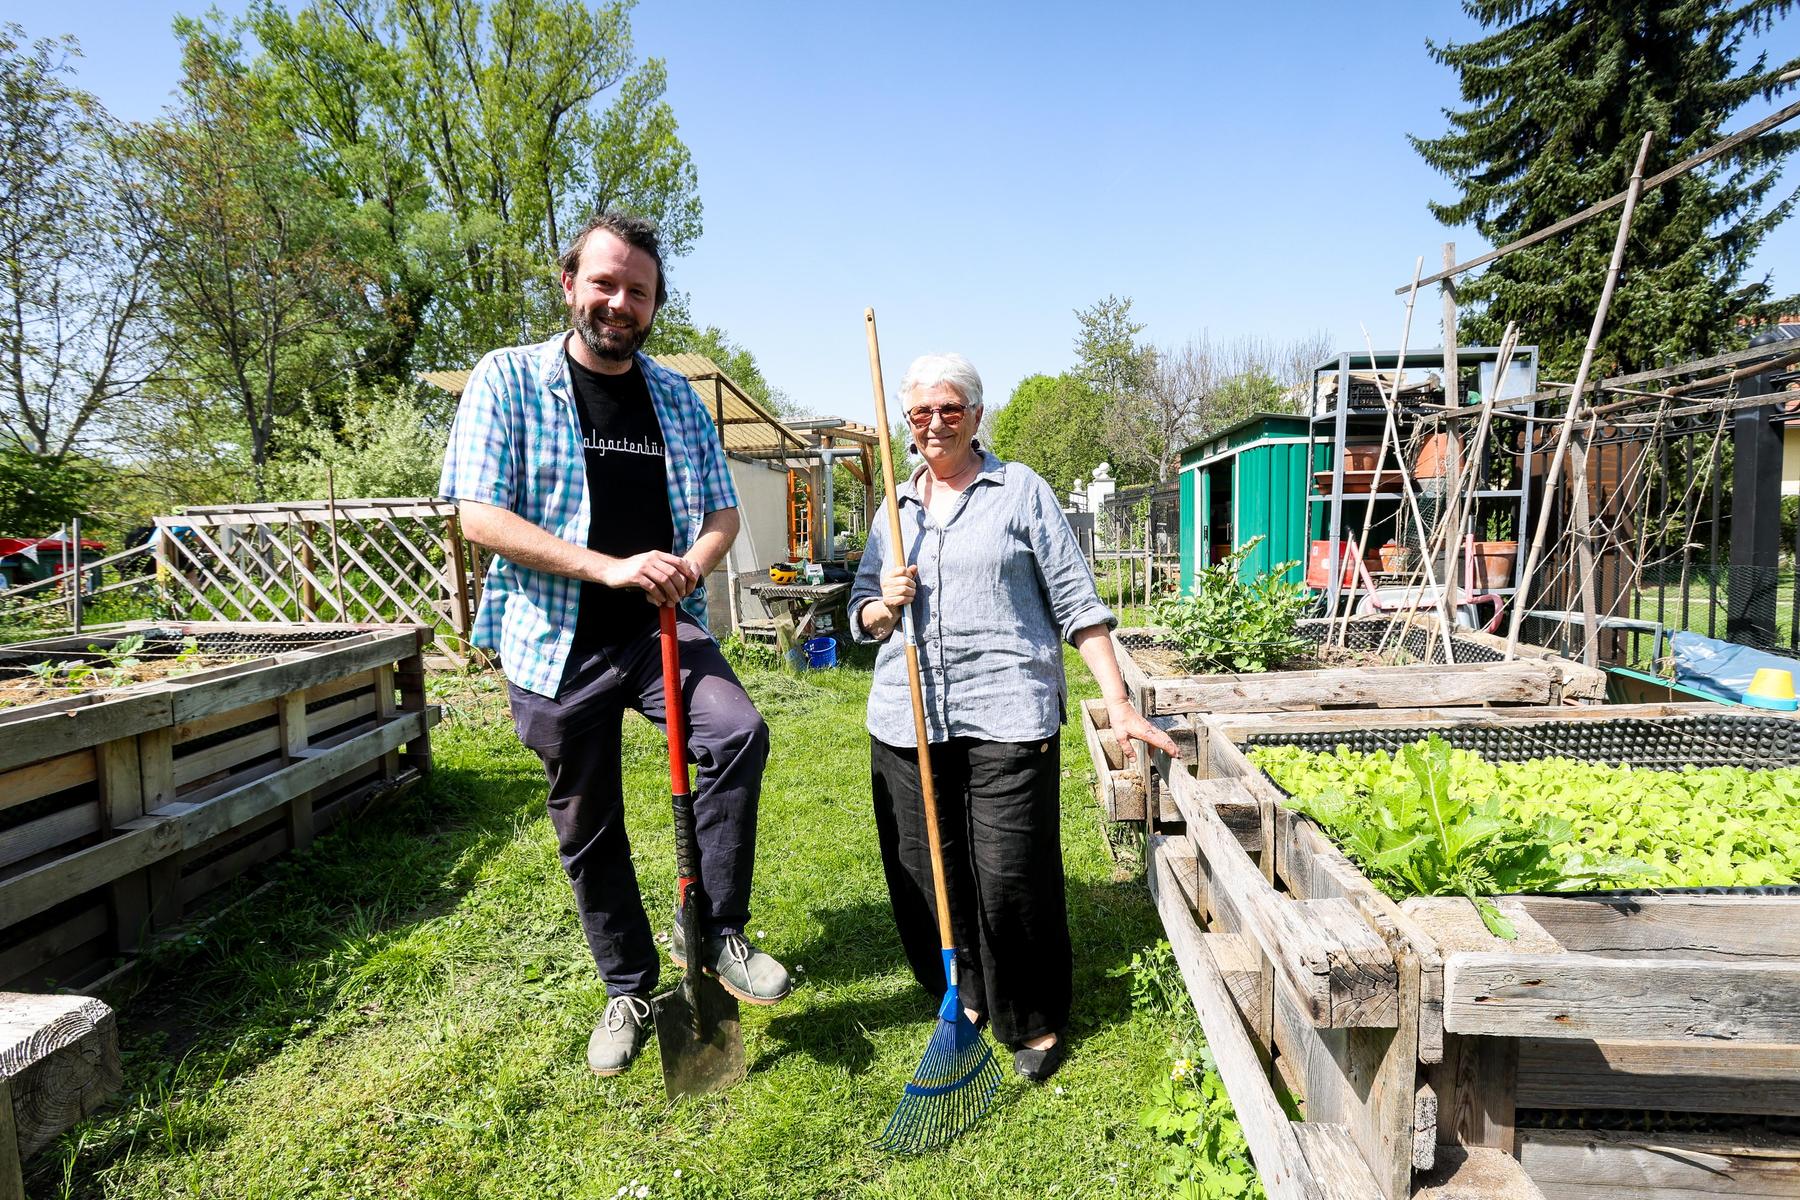 Gemeinschaftsgärten blühen auf: Zu Besuch bei den Grazer „Gartenzwergen“